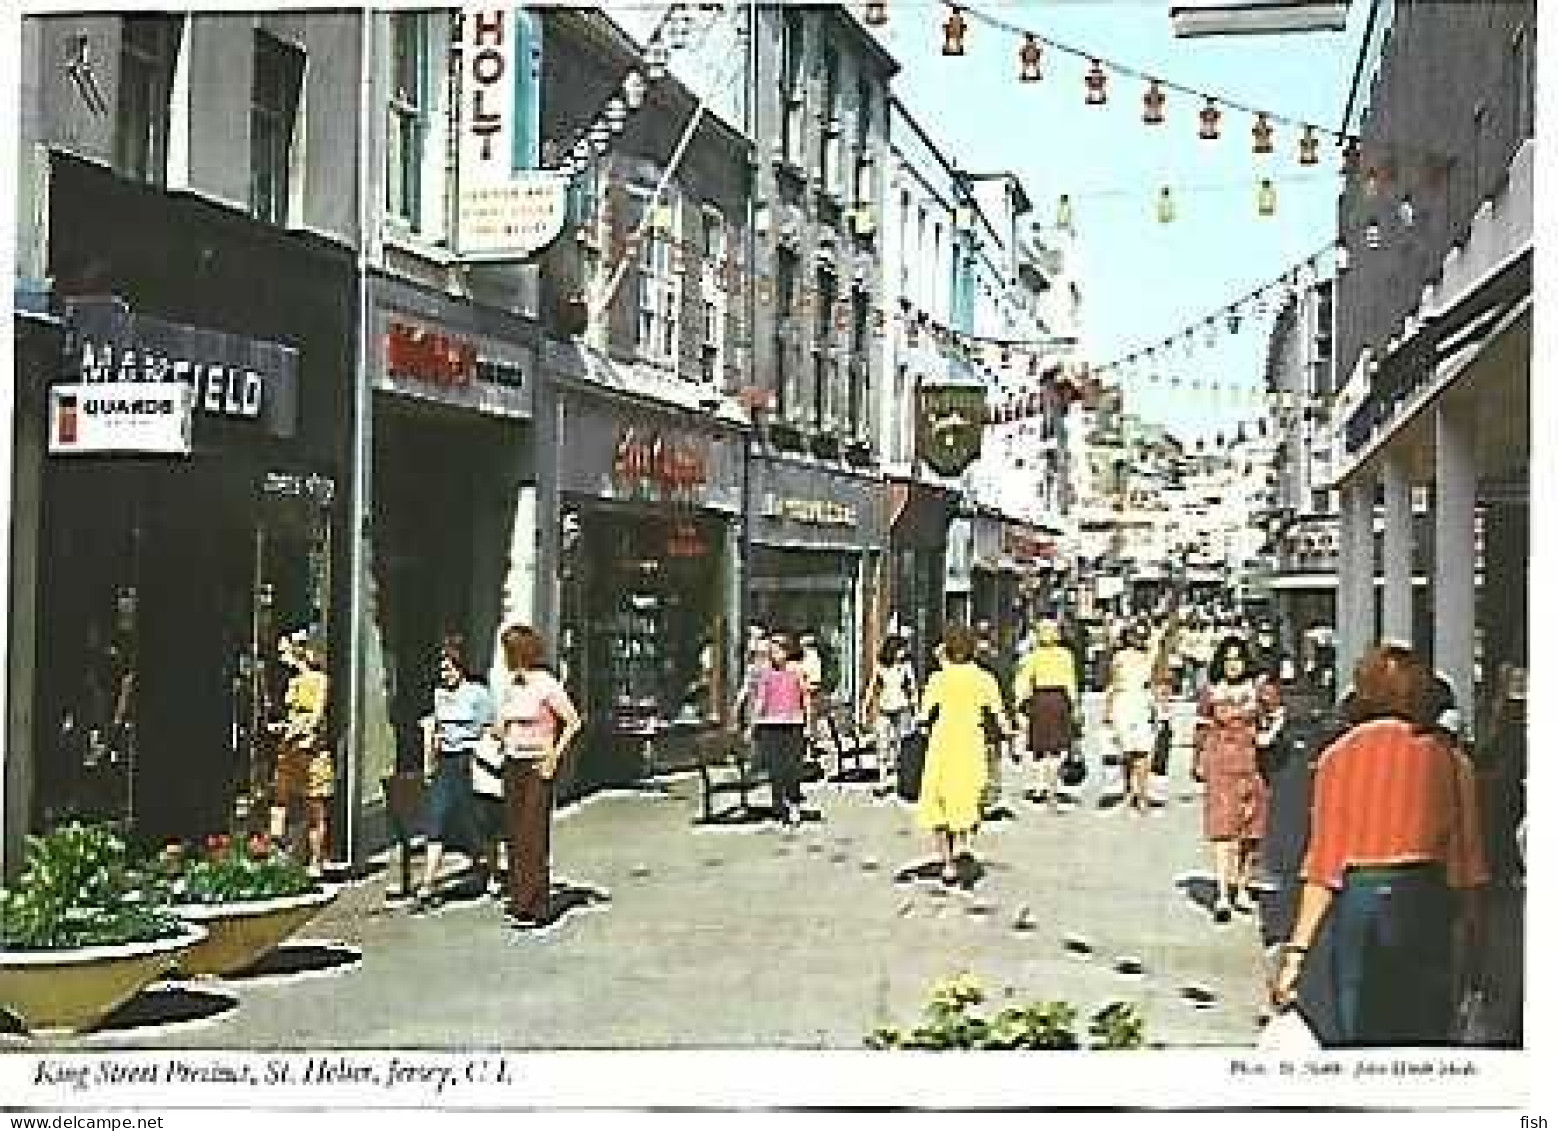 Jersey ** & Postal, St Helier, King Street Precint, Ed. Cabinteely Co. Dublin (269991) - St. Helier